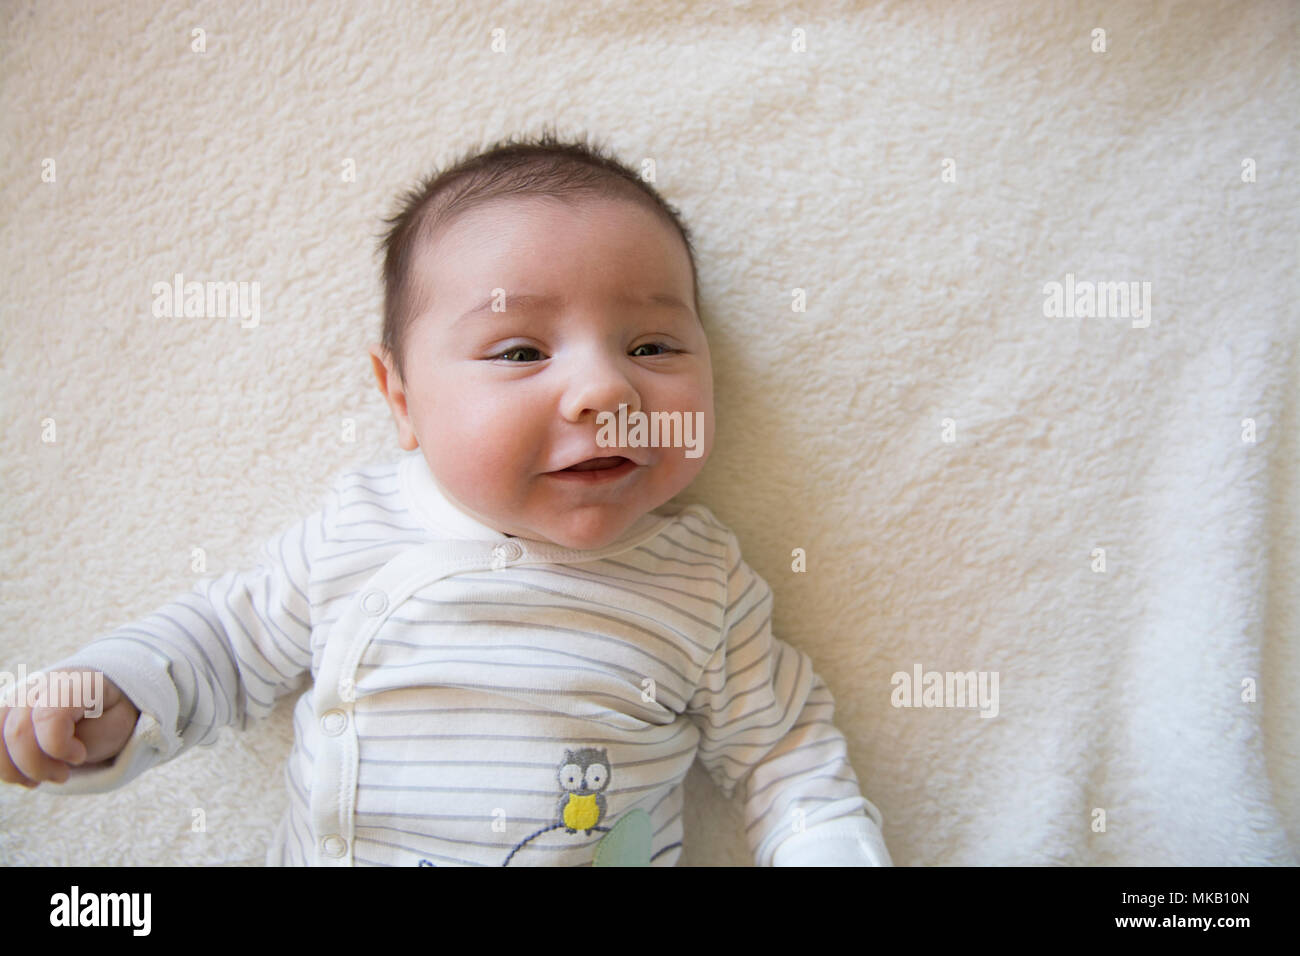 2 mese fa baby boy su una coltre bianca Foto Stock